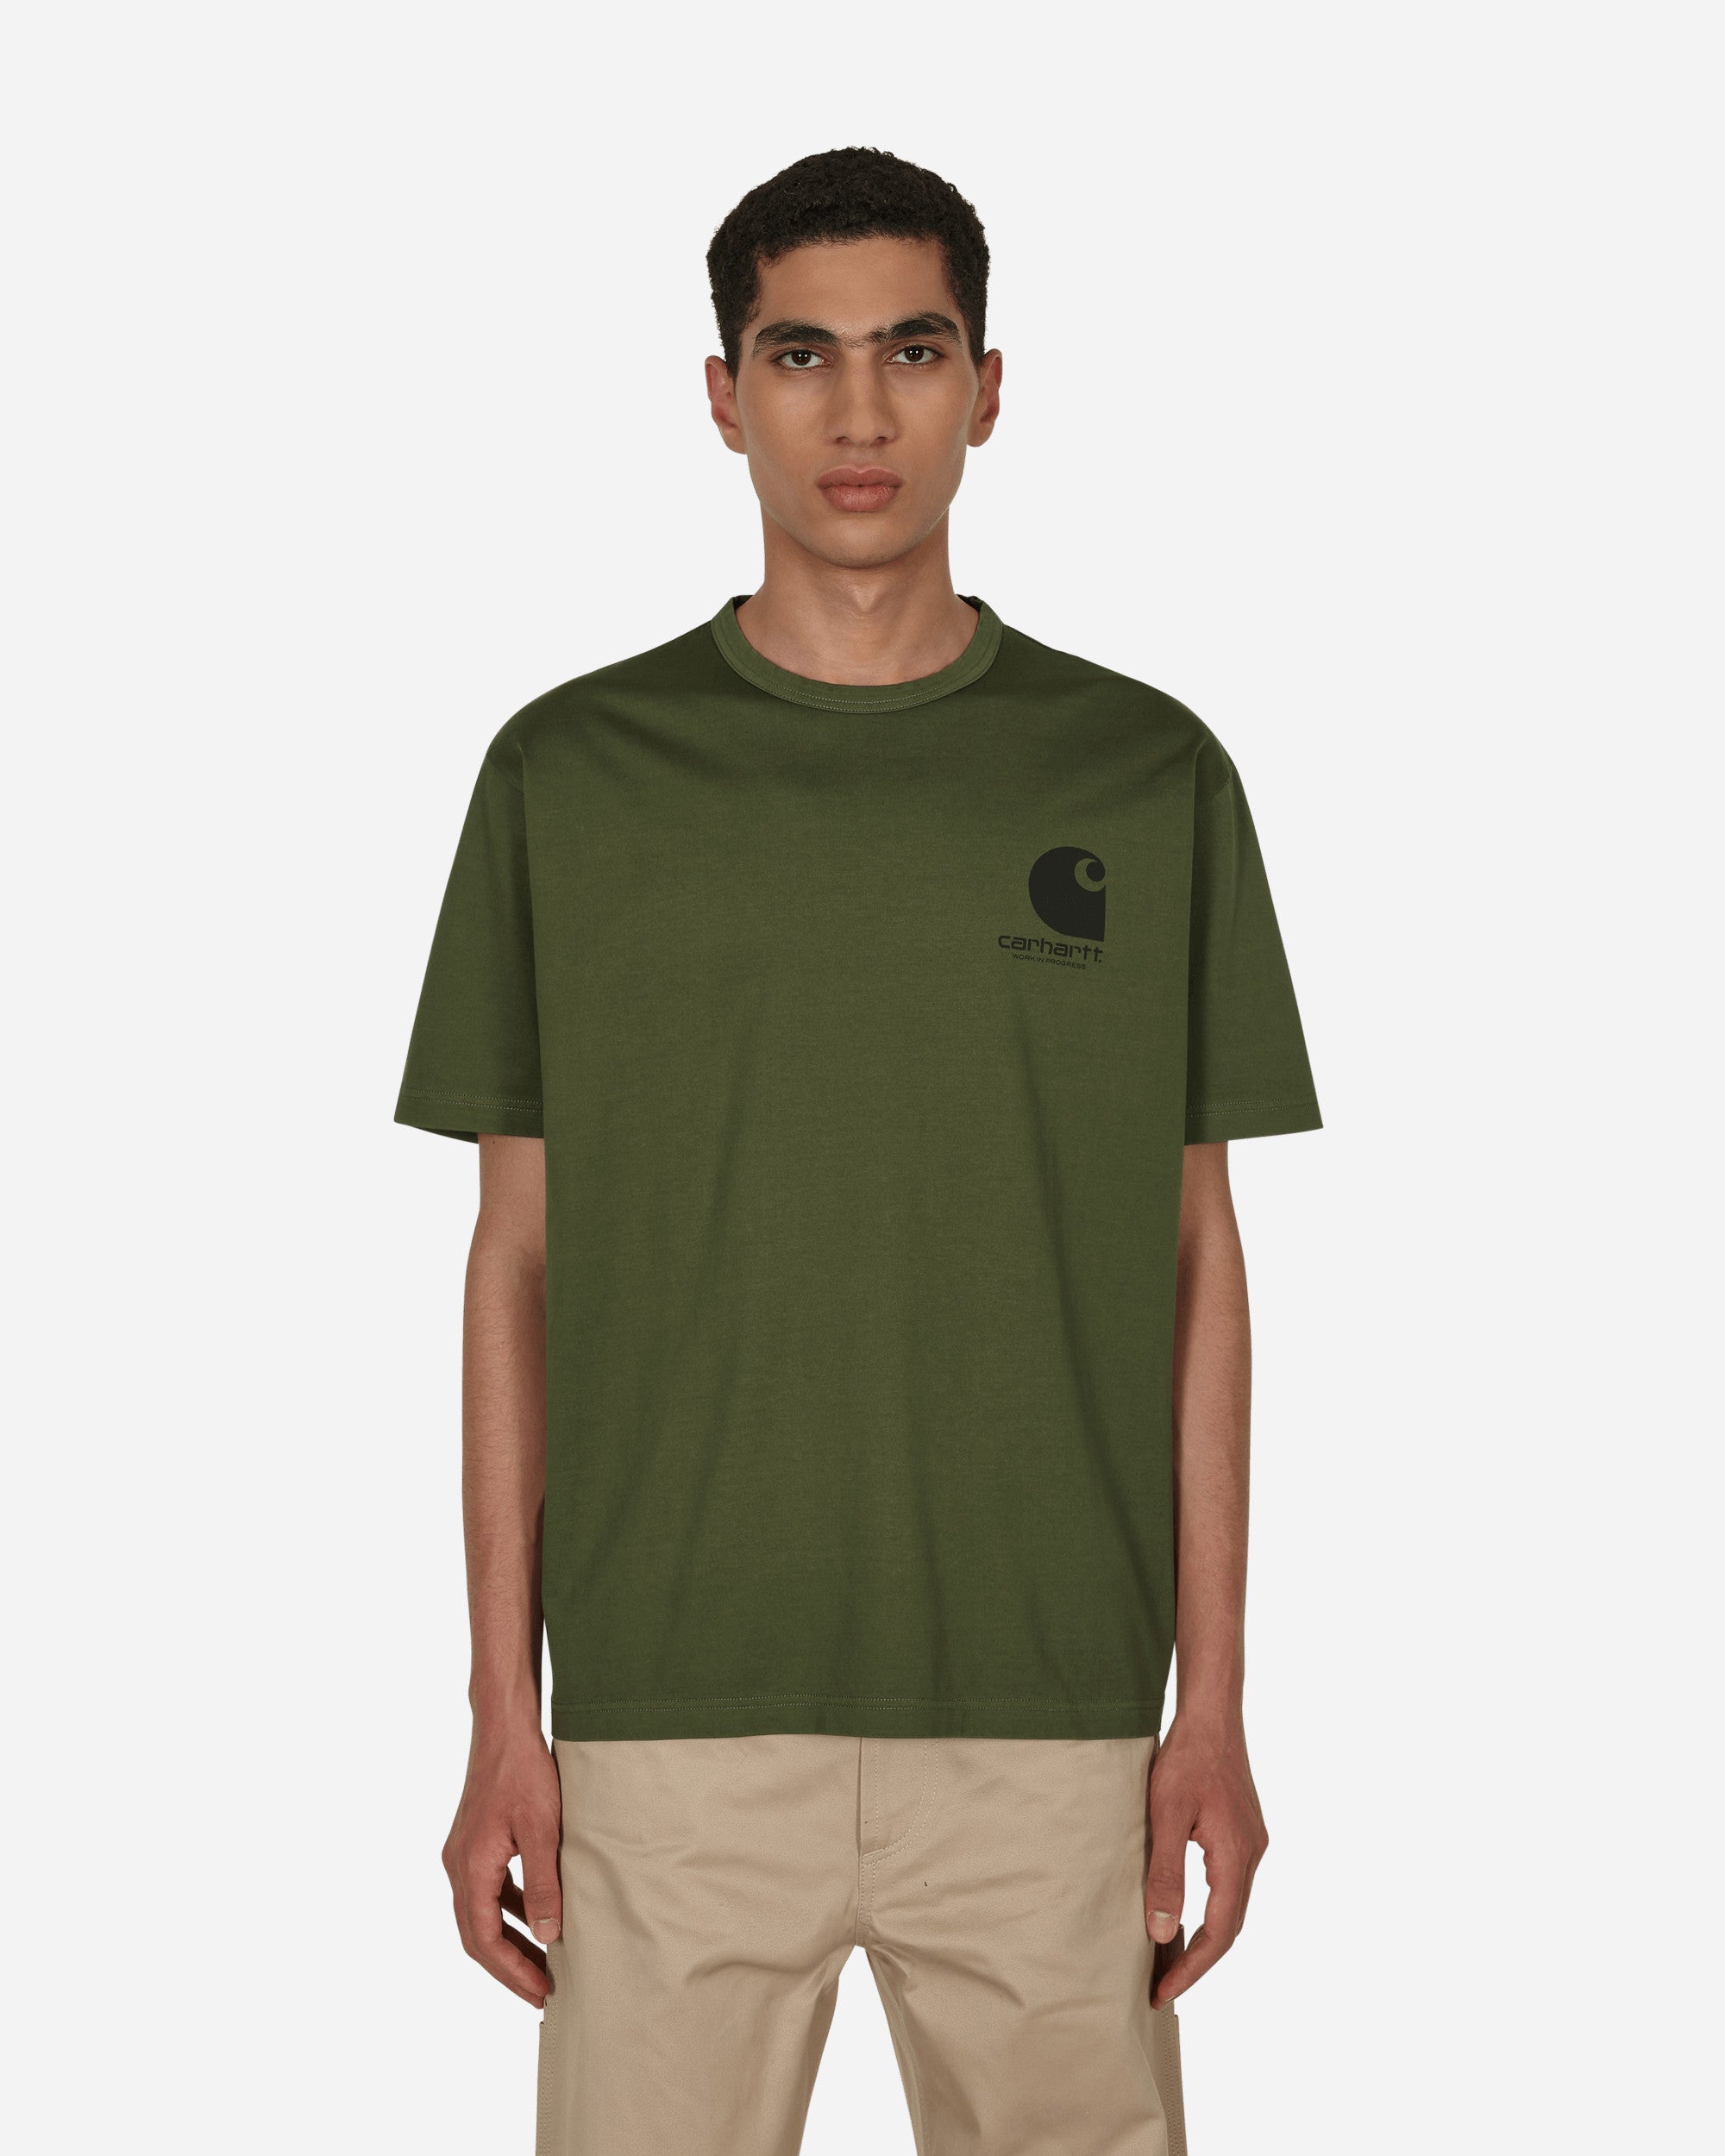 eYe Carhartt T-Shirt Green